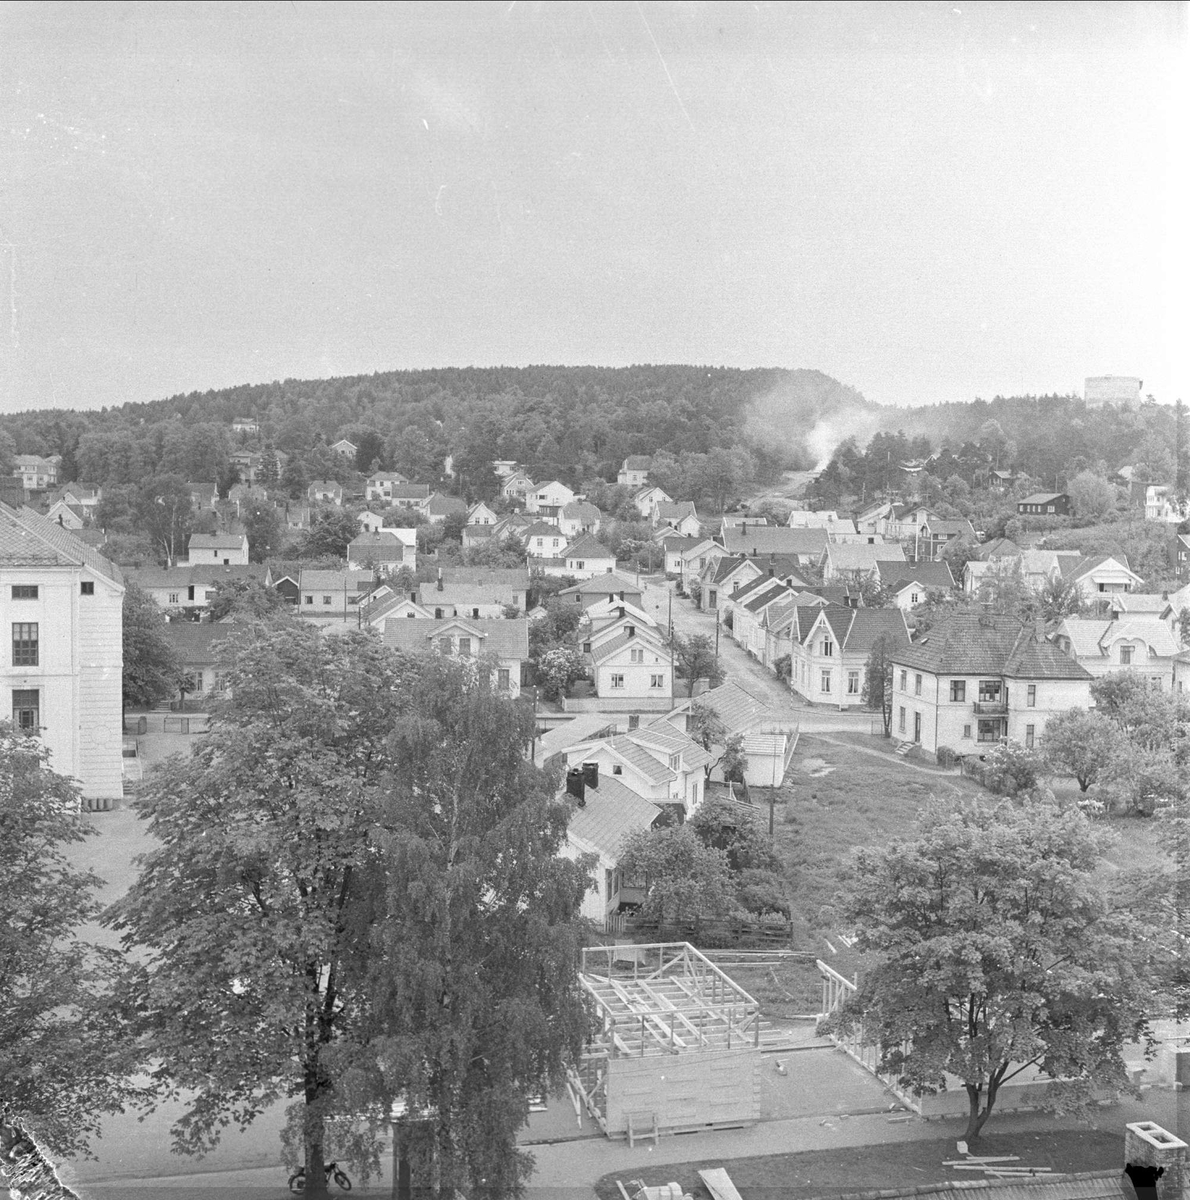 Porsgrunn, Telemark, 12.01.1957. Bybilde, trehusbebyggelse sett ovenifra.